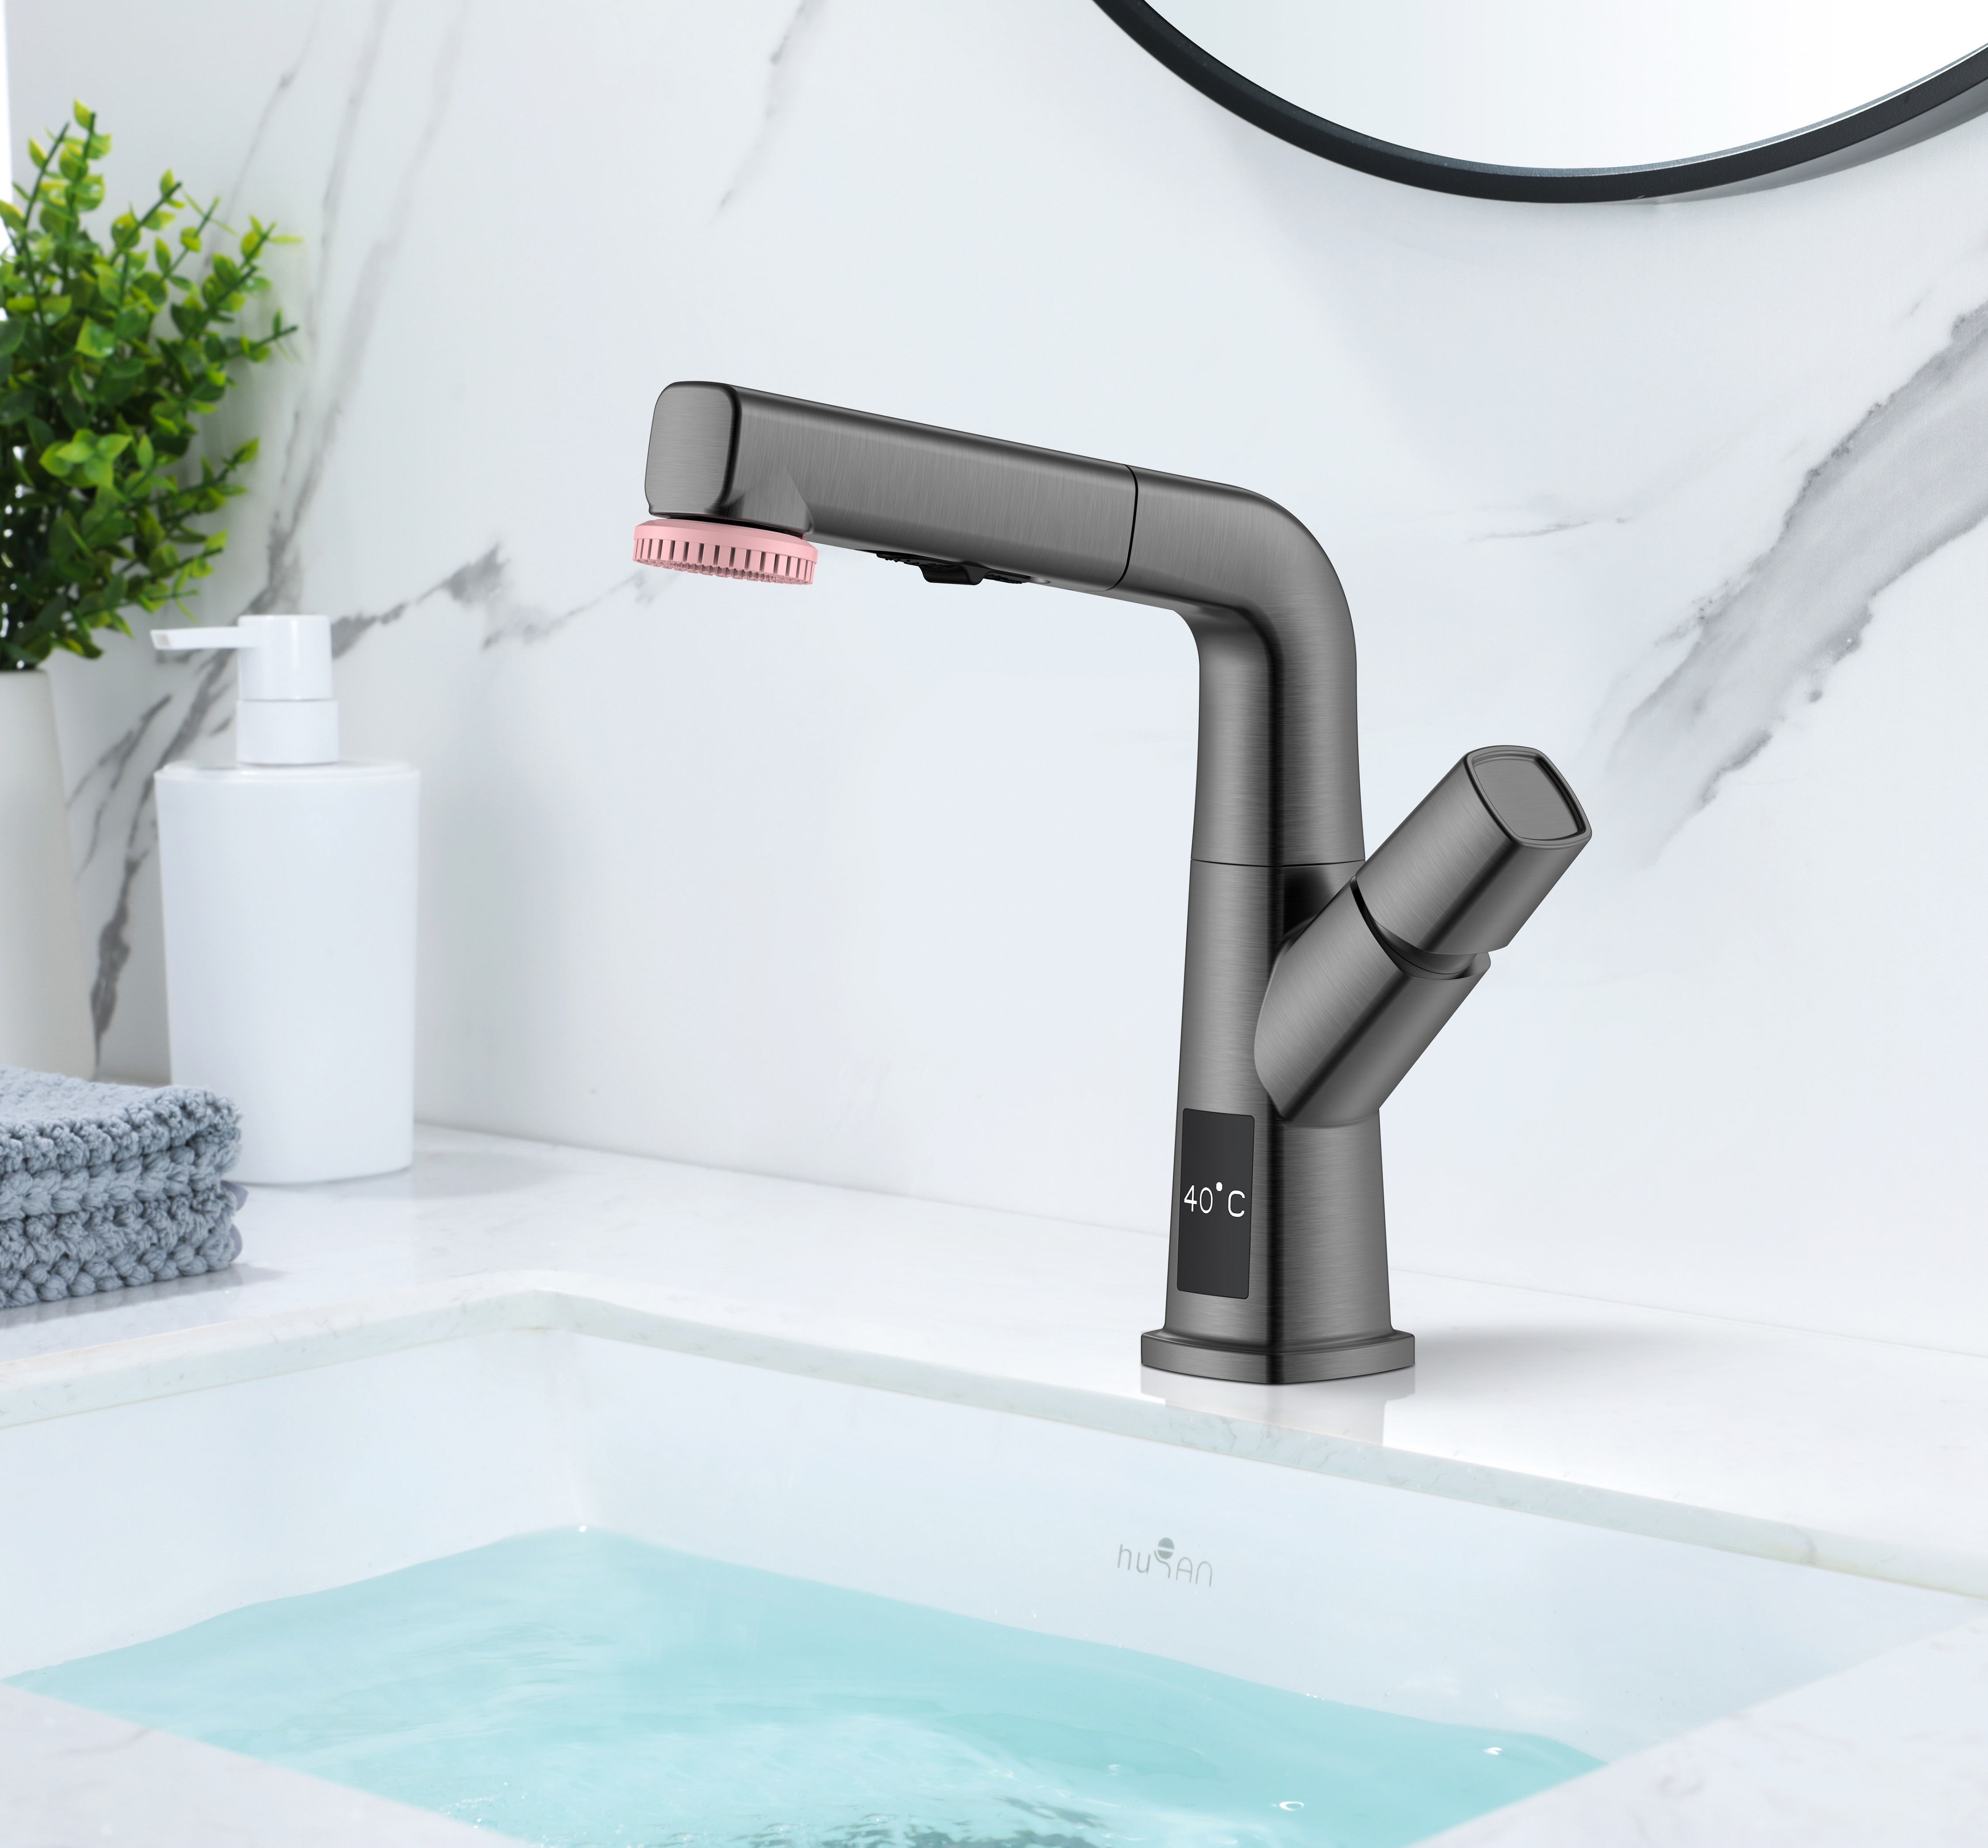 Affichage de la température du robinet du robinet du lavabo de la salle de bains blanc mat 